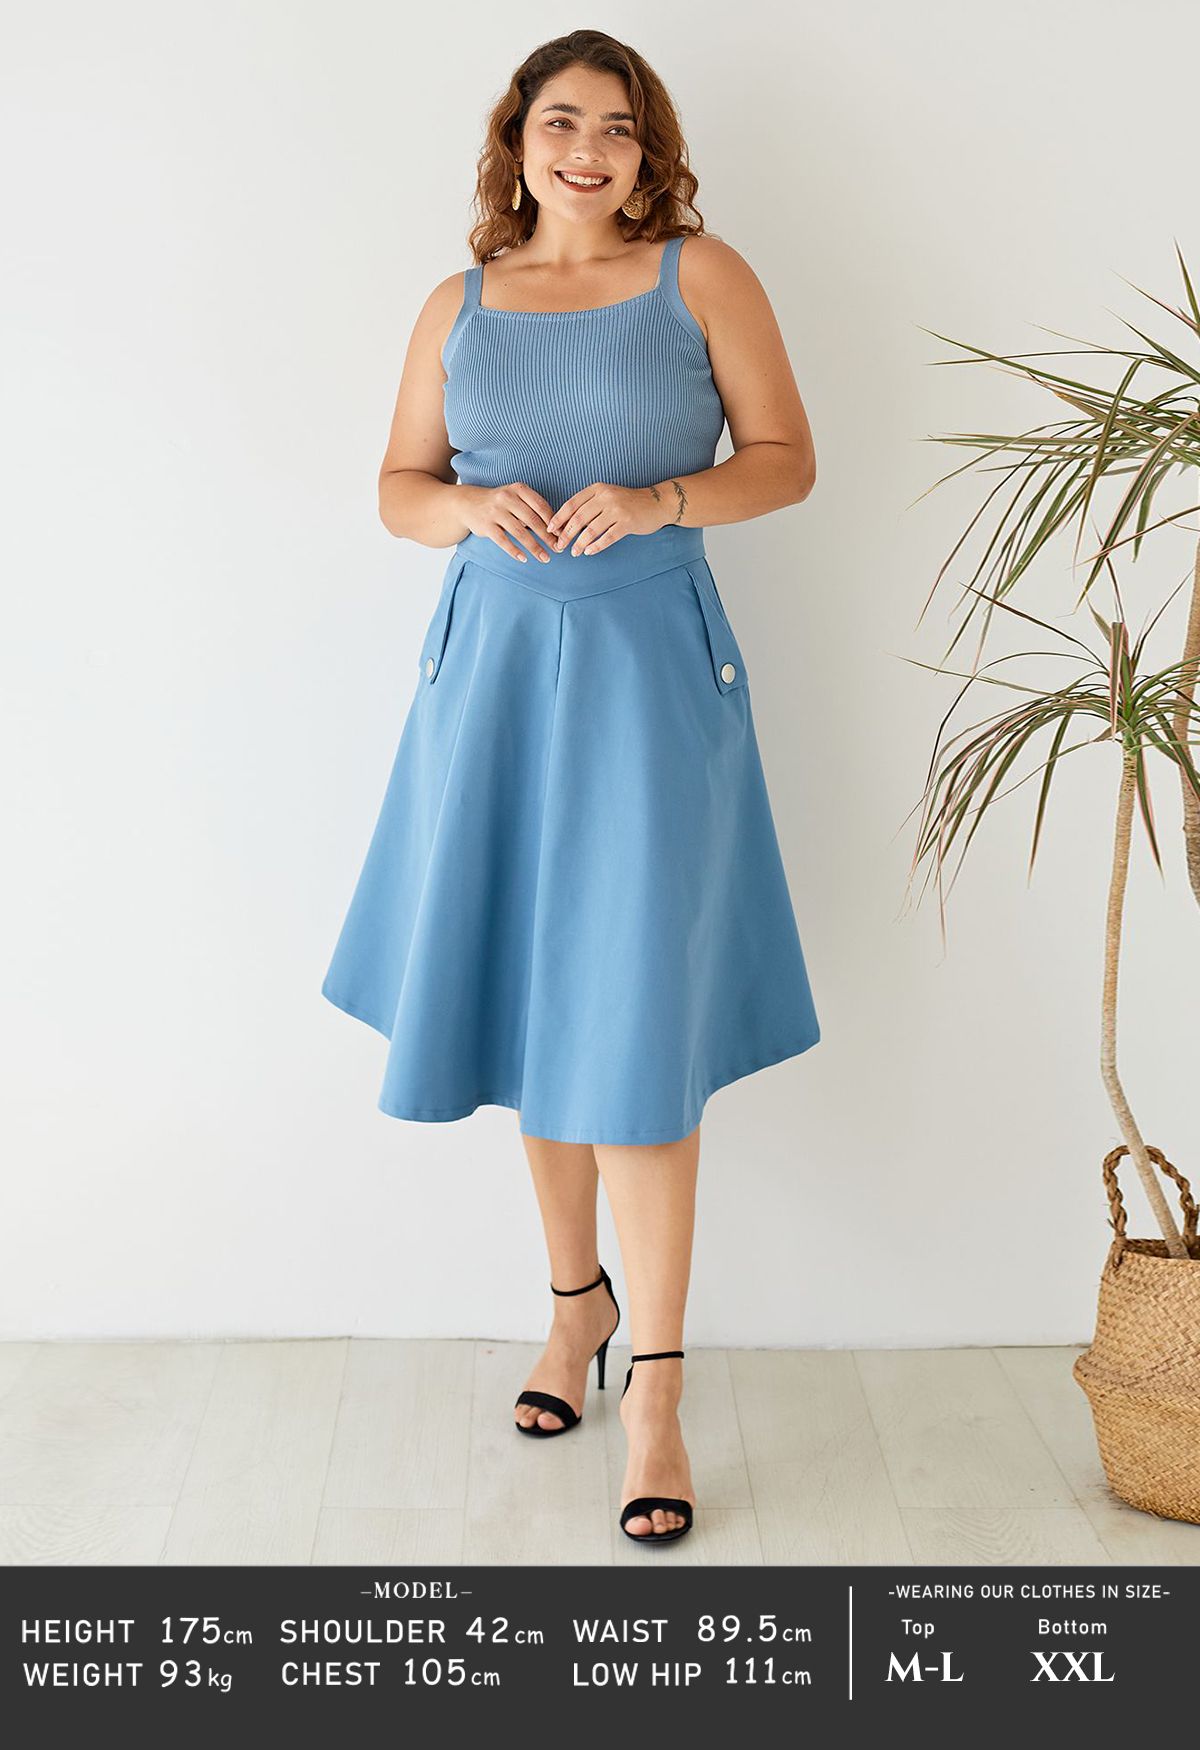 Falda midi de línea simple en simplicidad clásica en azul